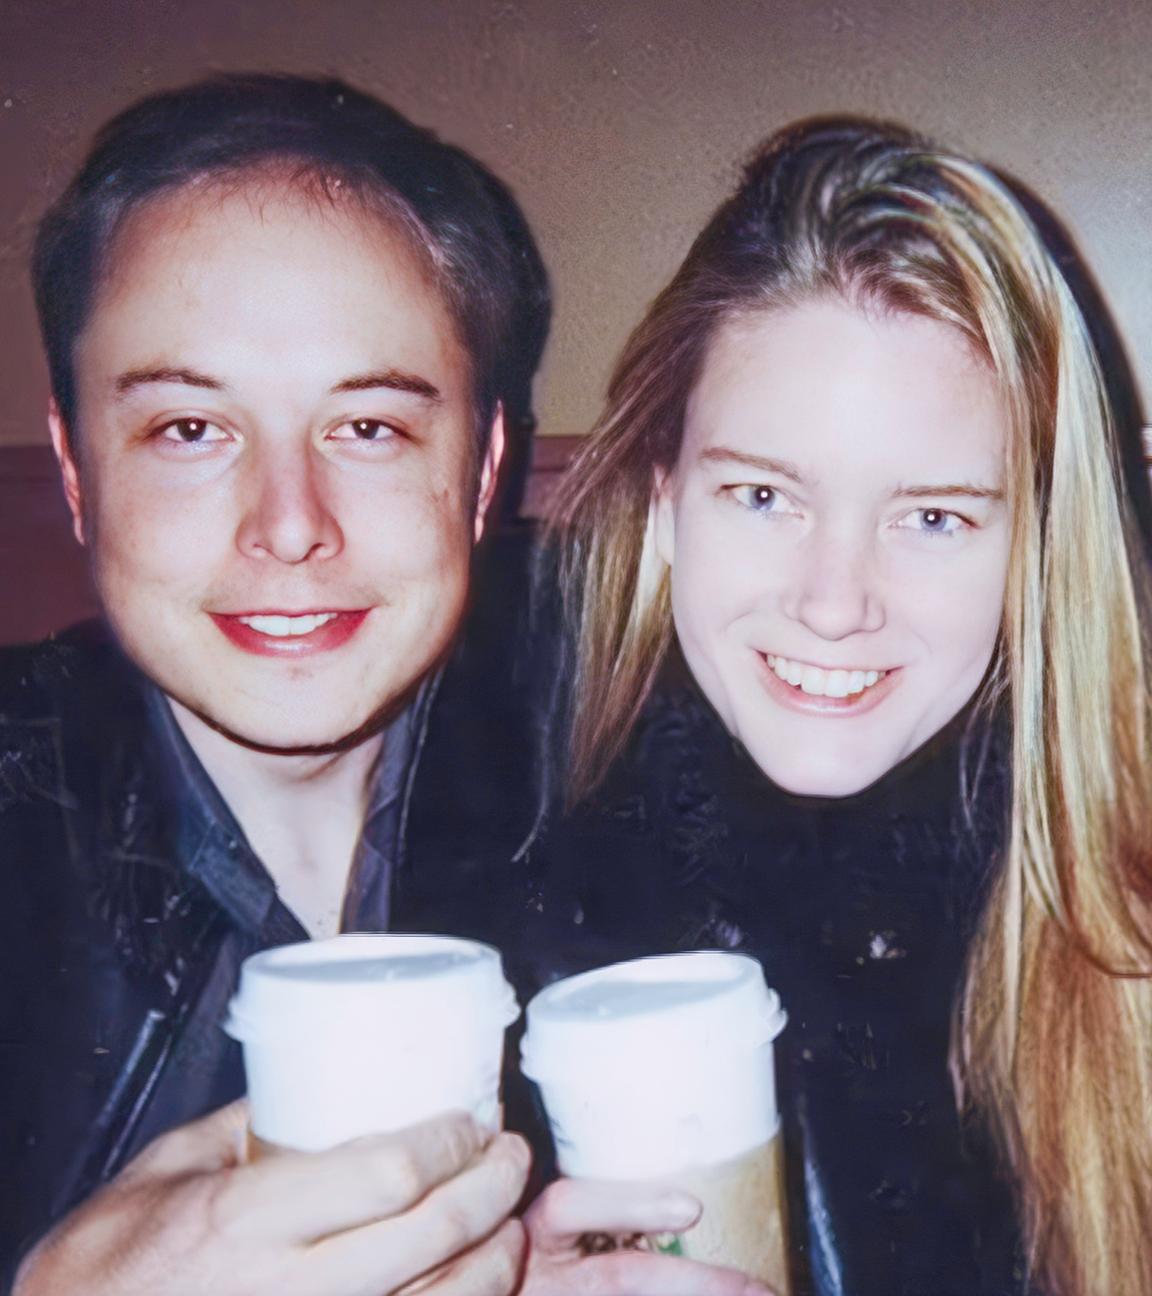 Elon Musk und Justine Wilson sitzen nebeneinander und lächeln in die Kamera. Elon Musk hat seinen Arm um Justine Wilson gelegt und sie halten beide Kaffeebecher in den Händen.